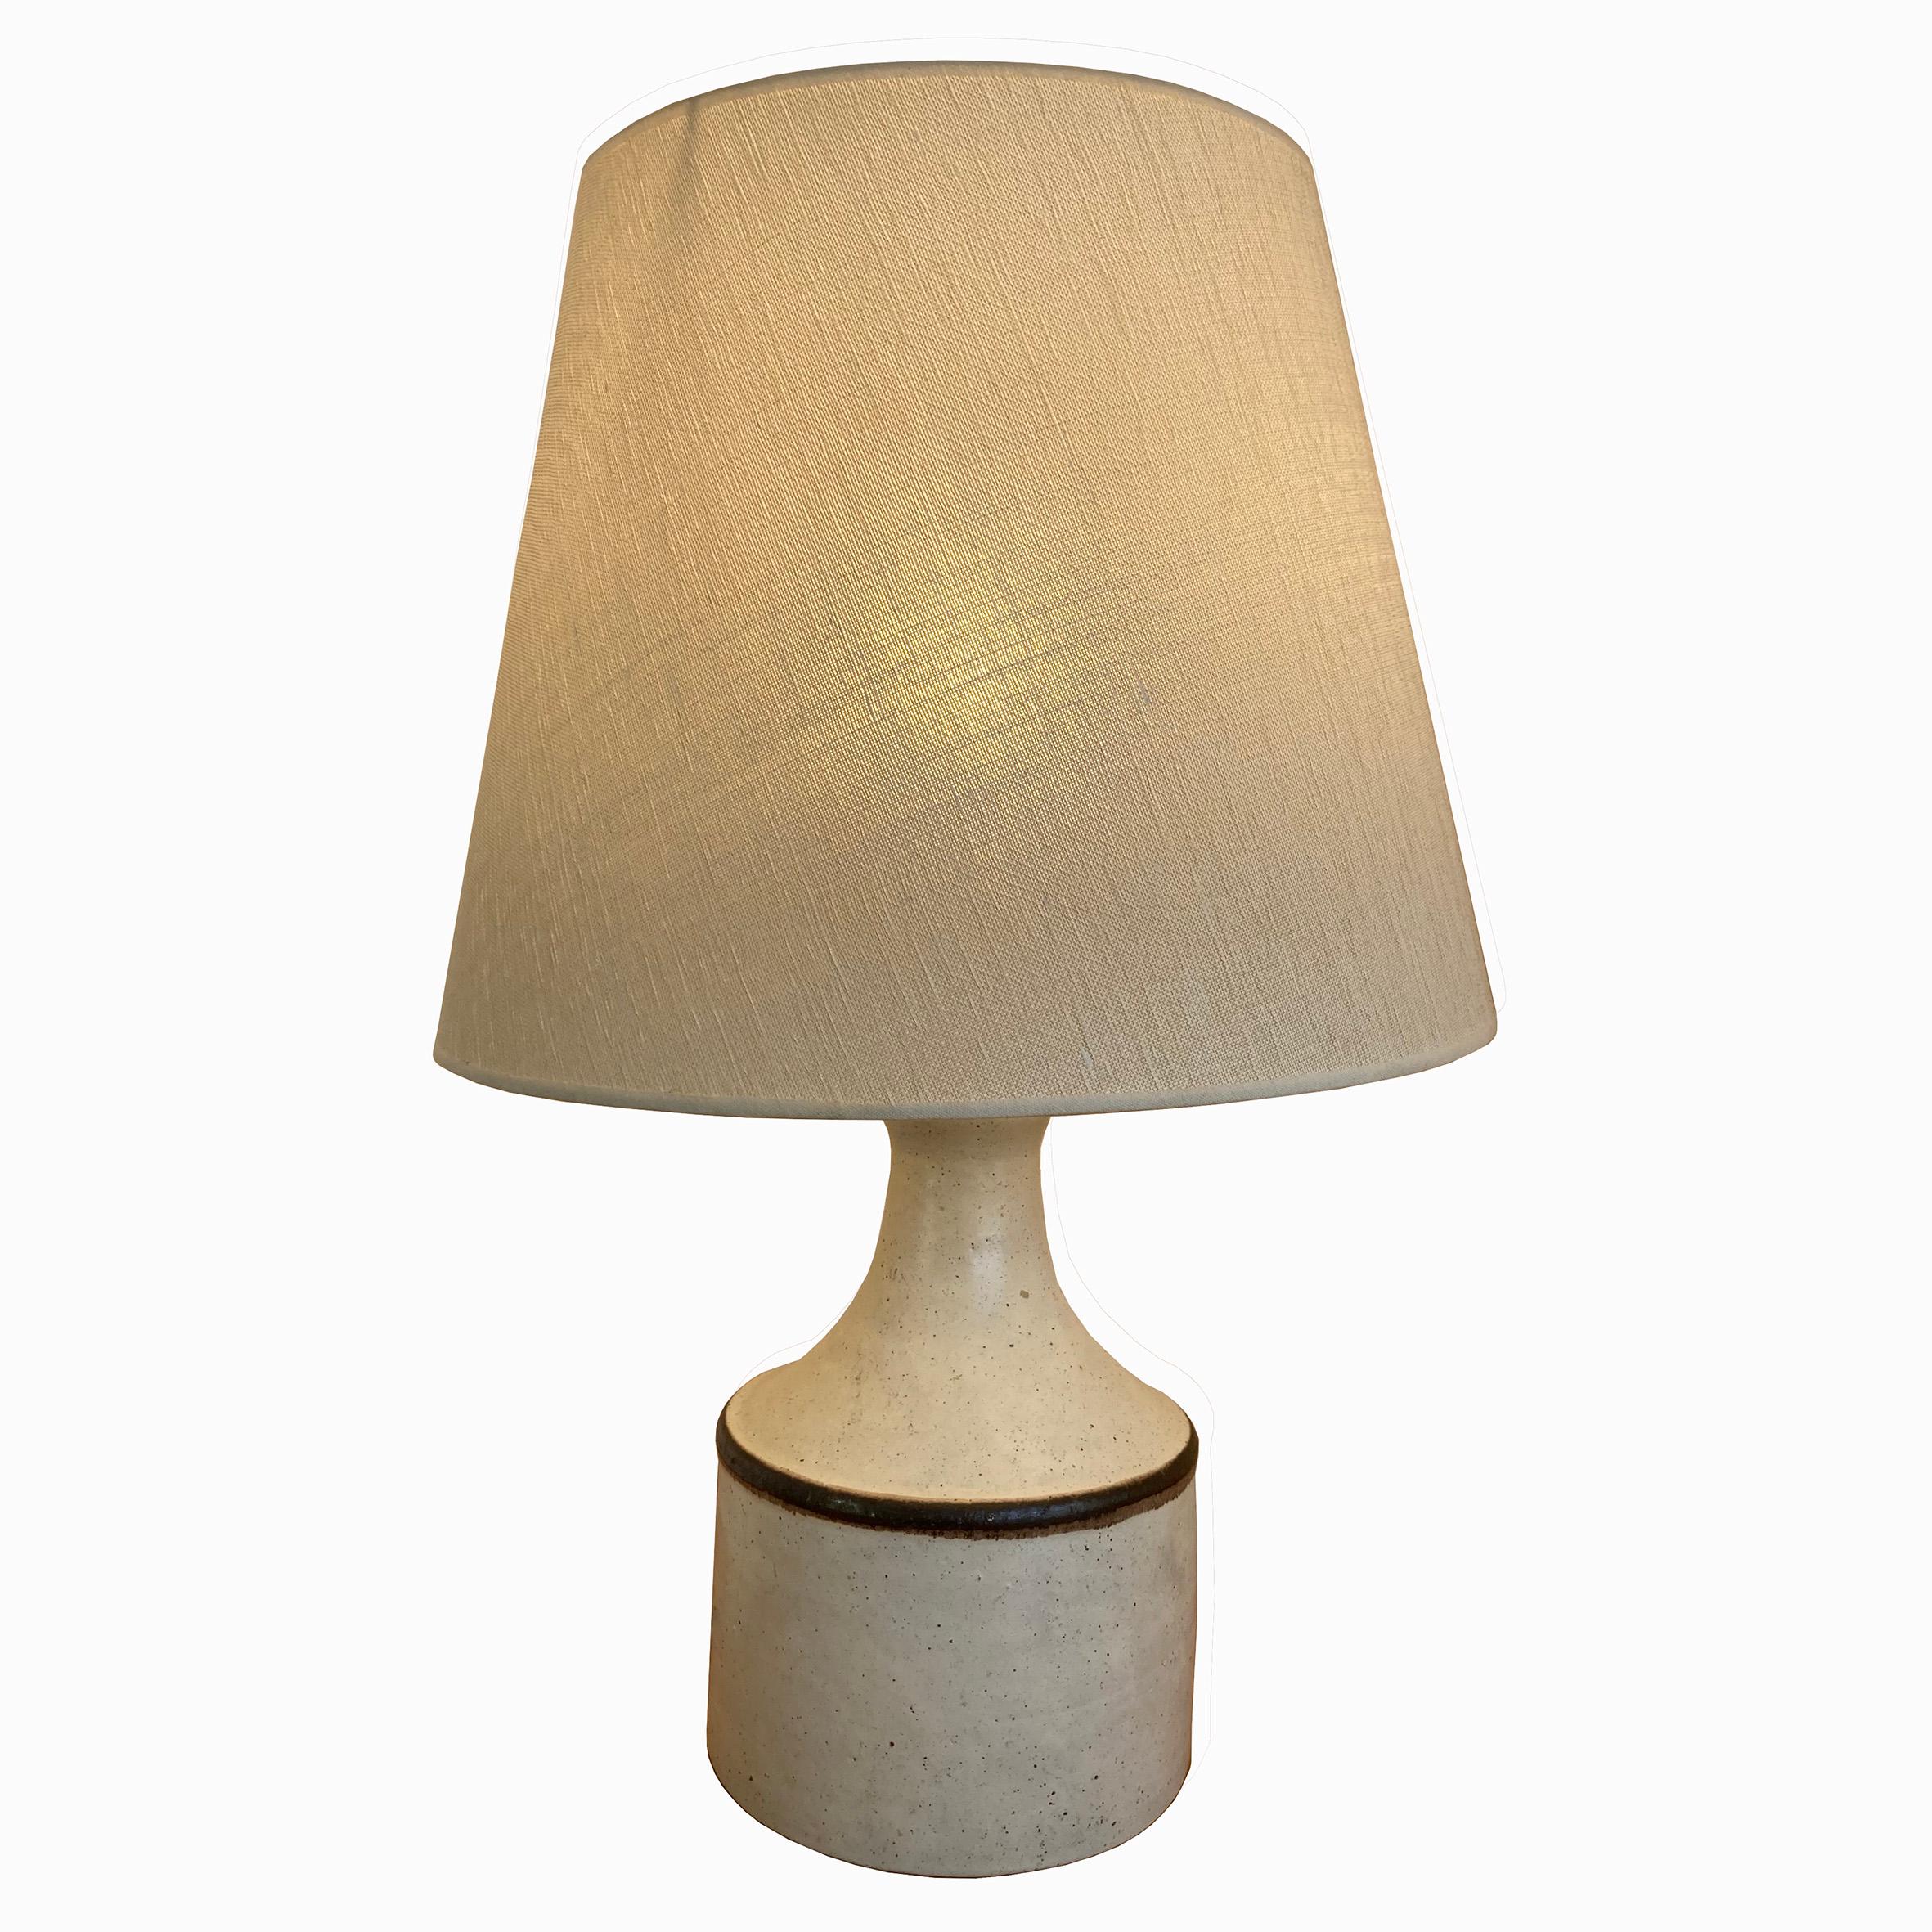 Bruno Gambone (1936-2021)

Lampe à poser

Lampe de table en céramique gris clair, avec un corps cylindrique décoré d'une ligne noire sur le bord, surmonté d'une tige en forme de trompette.
Avec un abat-jour en tissu gris clair.
Signé en dessous 